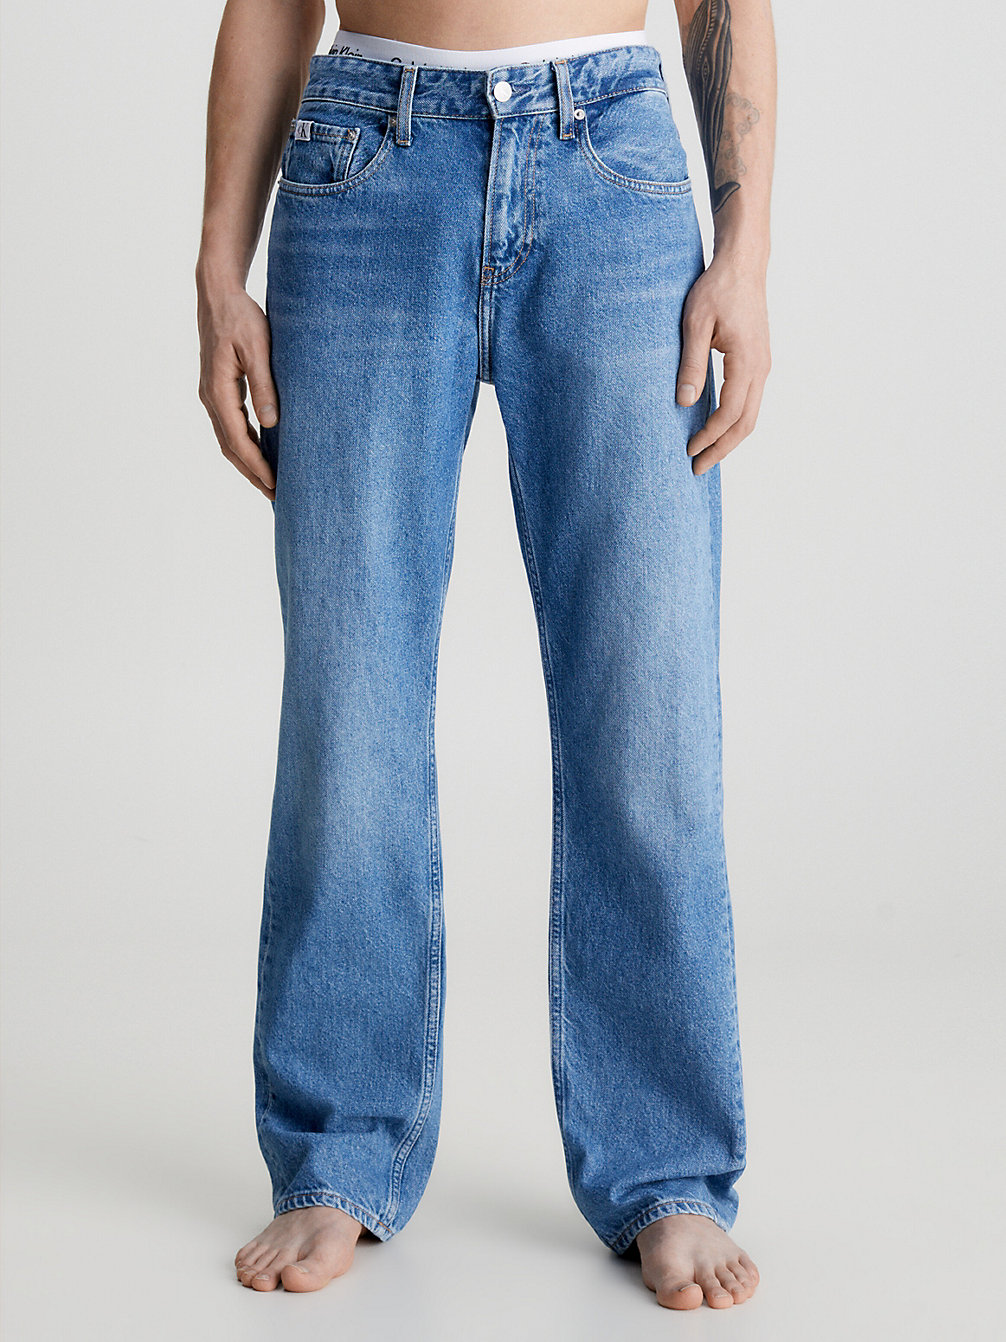 DENIM MEDIUM 90's Straight Jeans undefined Herren Calvin Klein